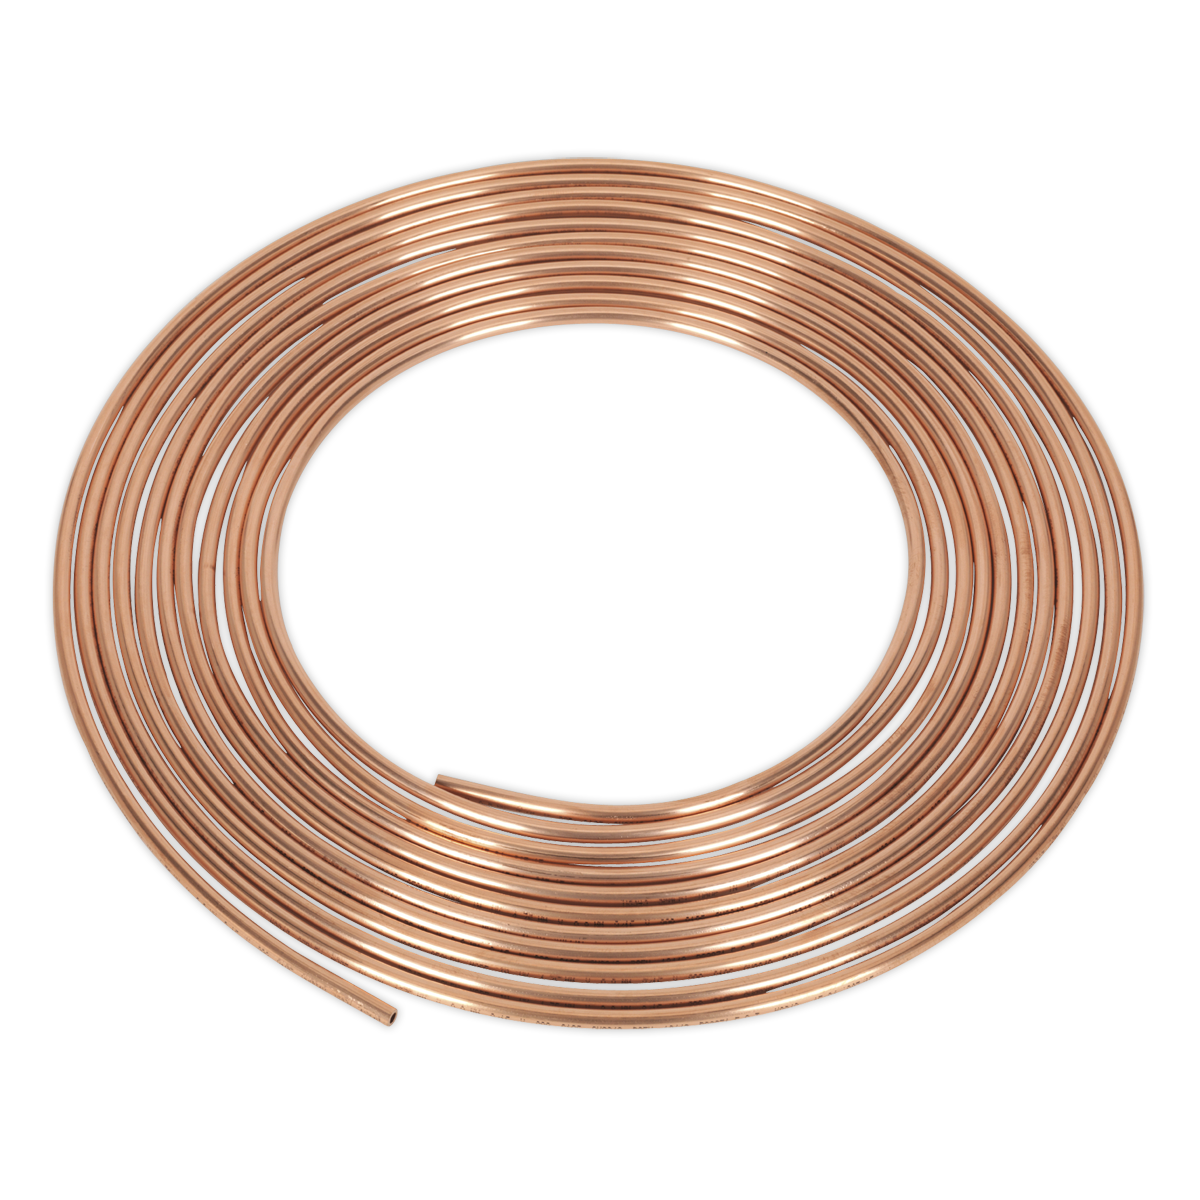 Sealey Brake Pipe Copper Tubing 22 Gauge 3/16" x 25ft BS EN 12449 C106 CBP002